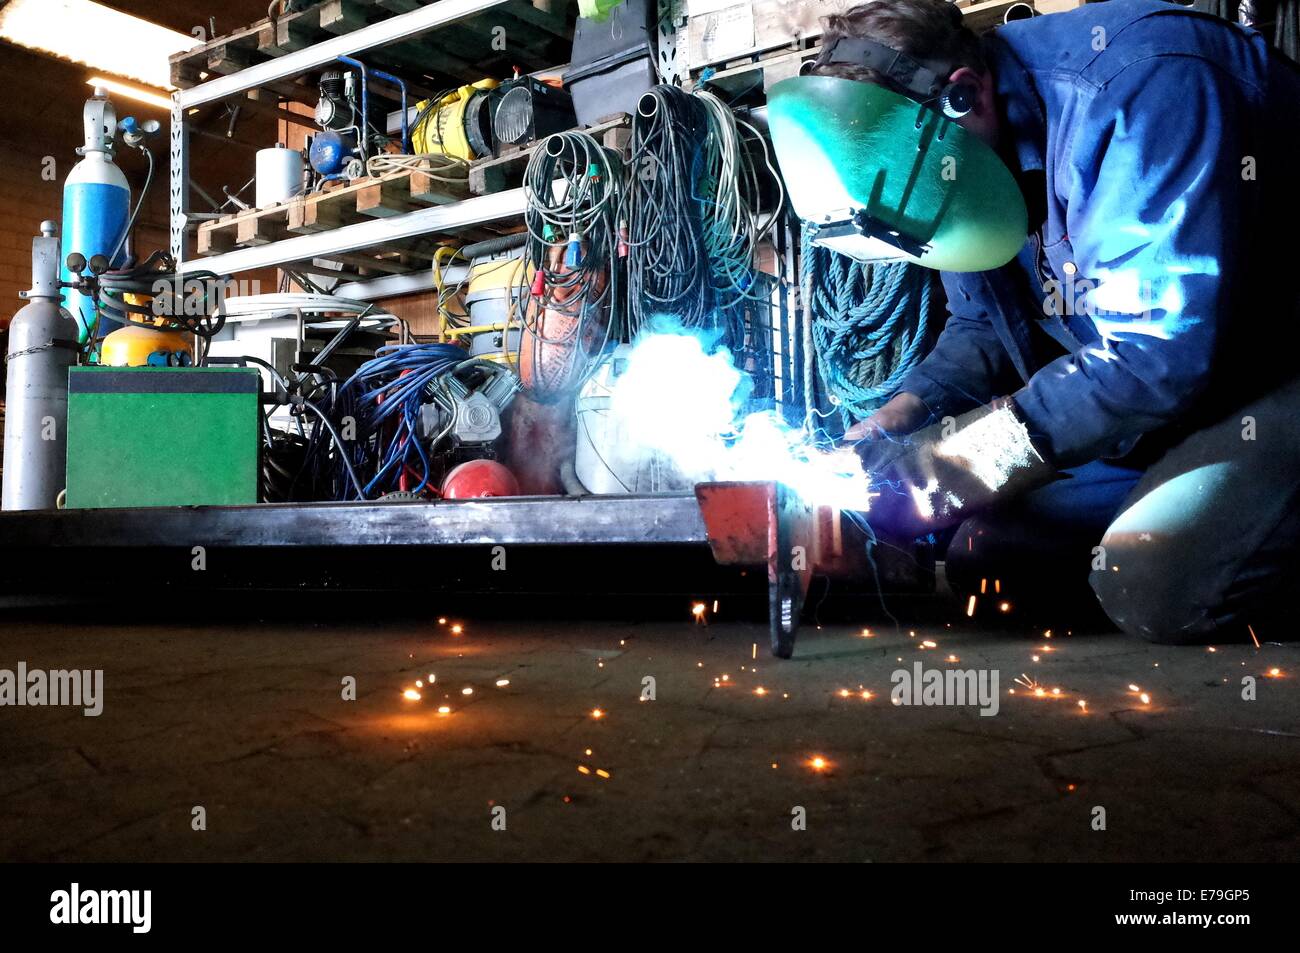 Welder in work with welding in the workshop Stock Photo